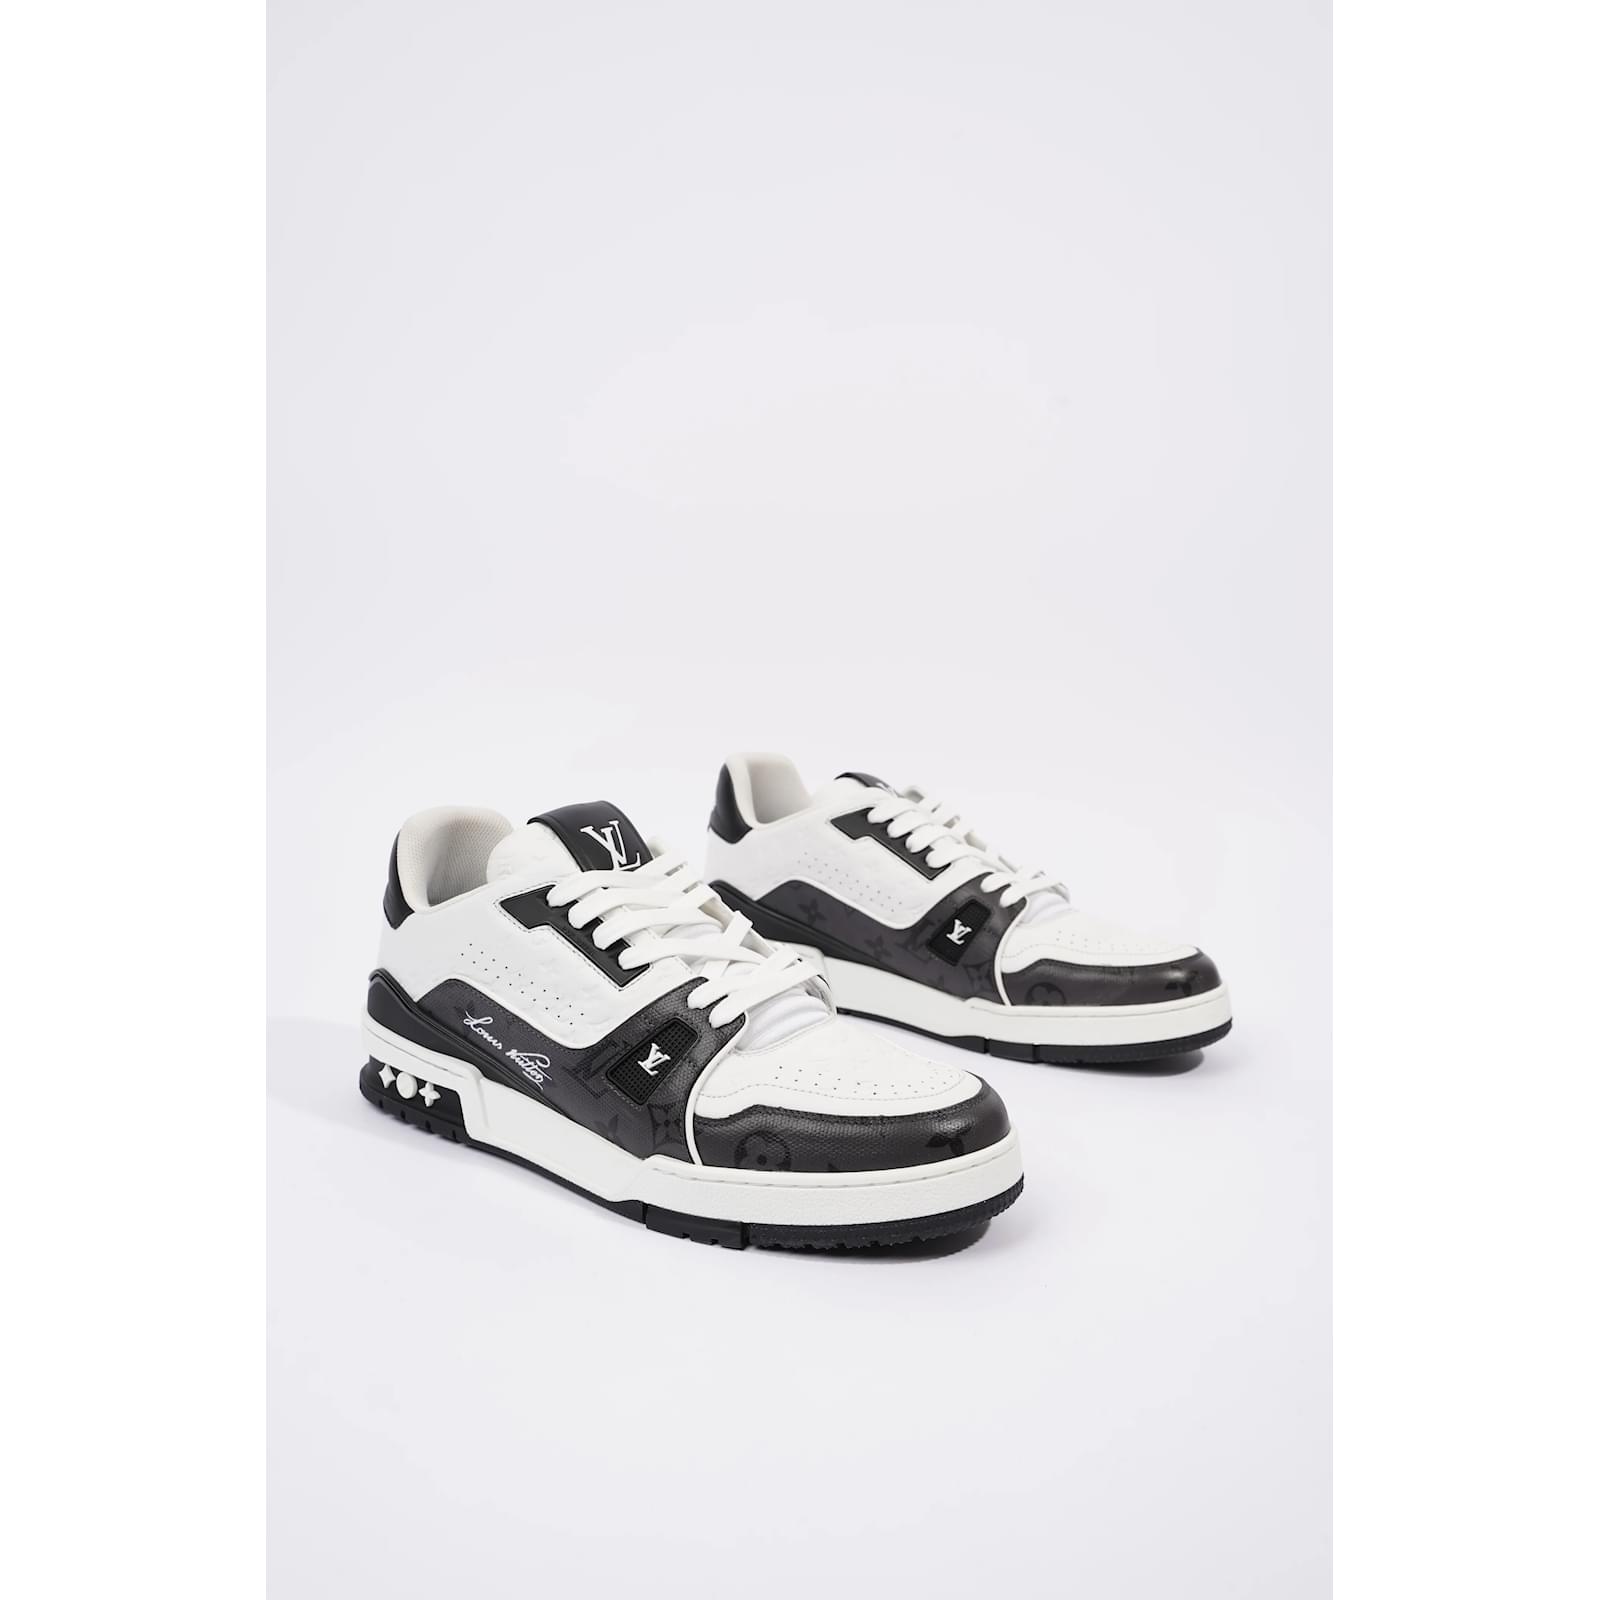 Louis Vuitton Mens Virgil Abloh Sneaker White / Black EU 42.5 / UK